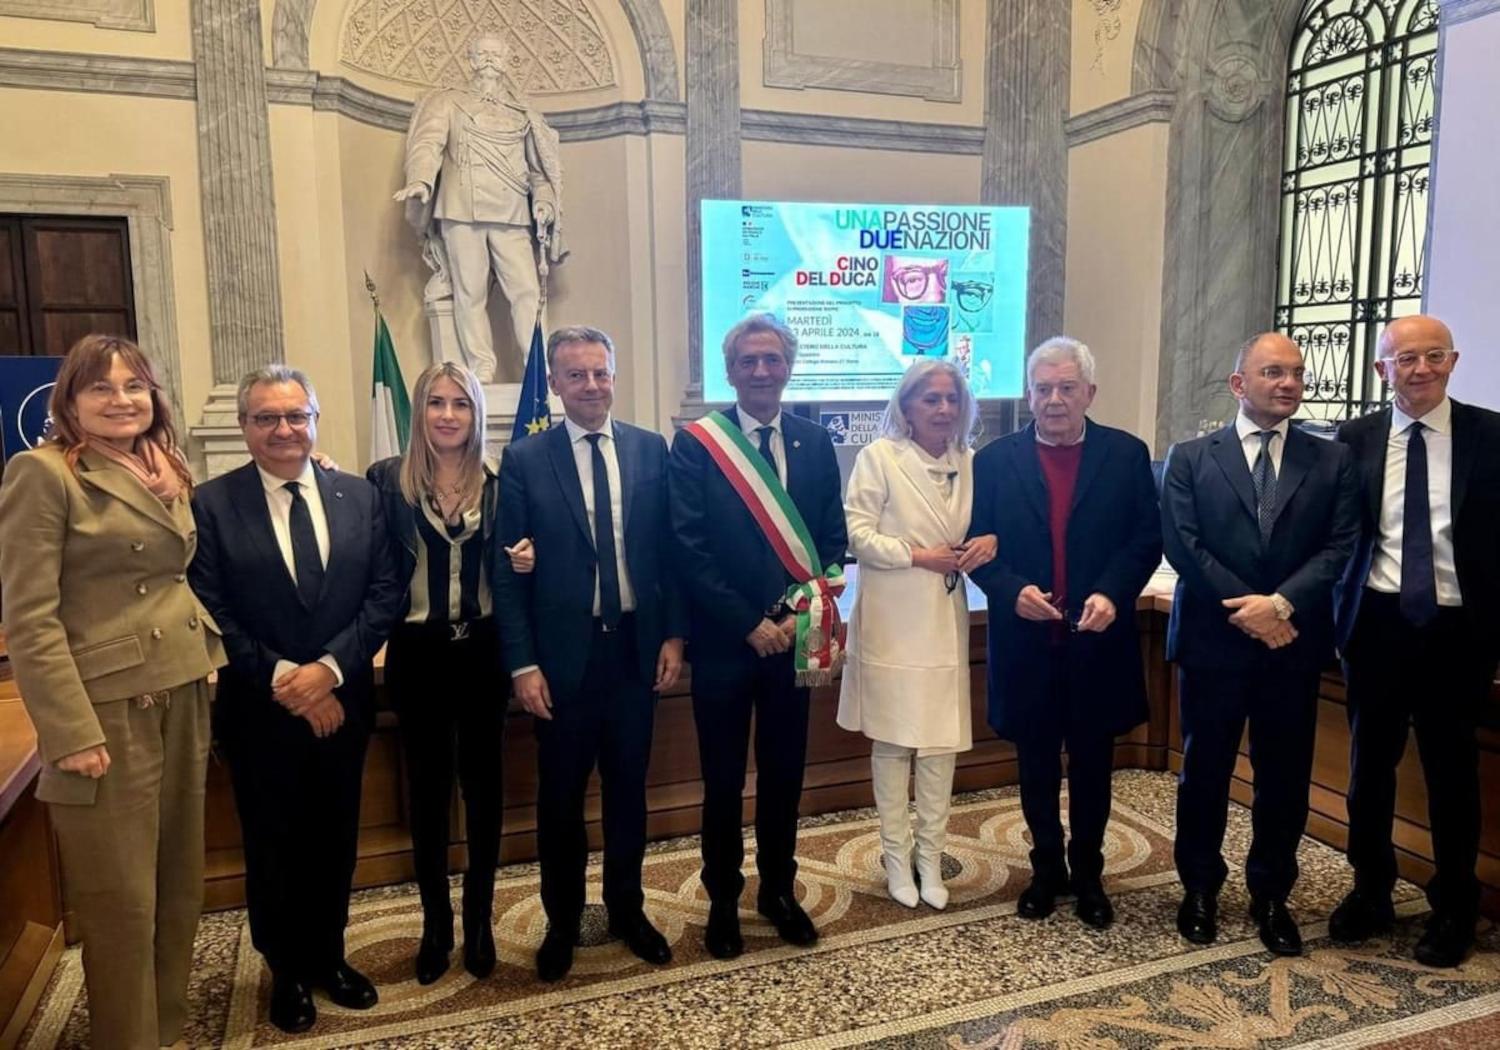 'Cino Del Duca, una passione due Nazioni', presentato nella Sala Spadolini del Ministero della Cultura a Roma, il progetto del documentario 